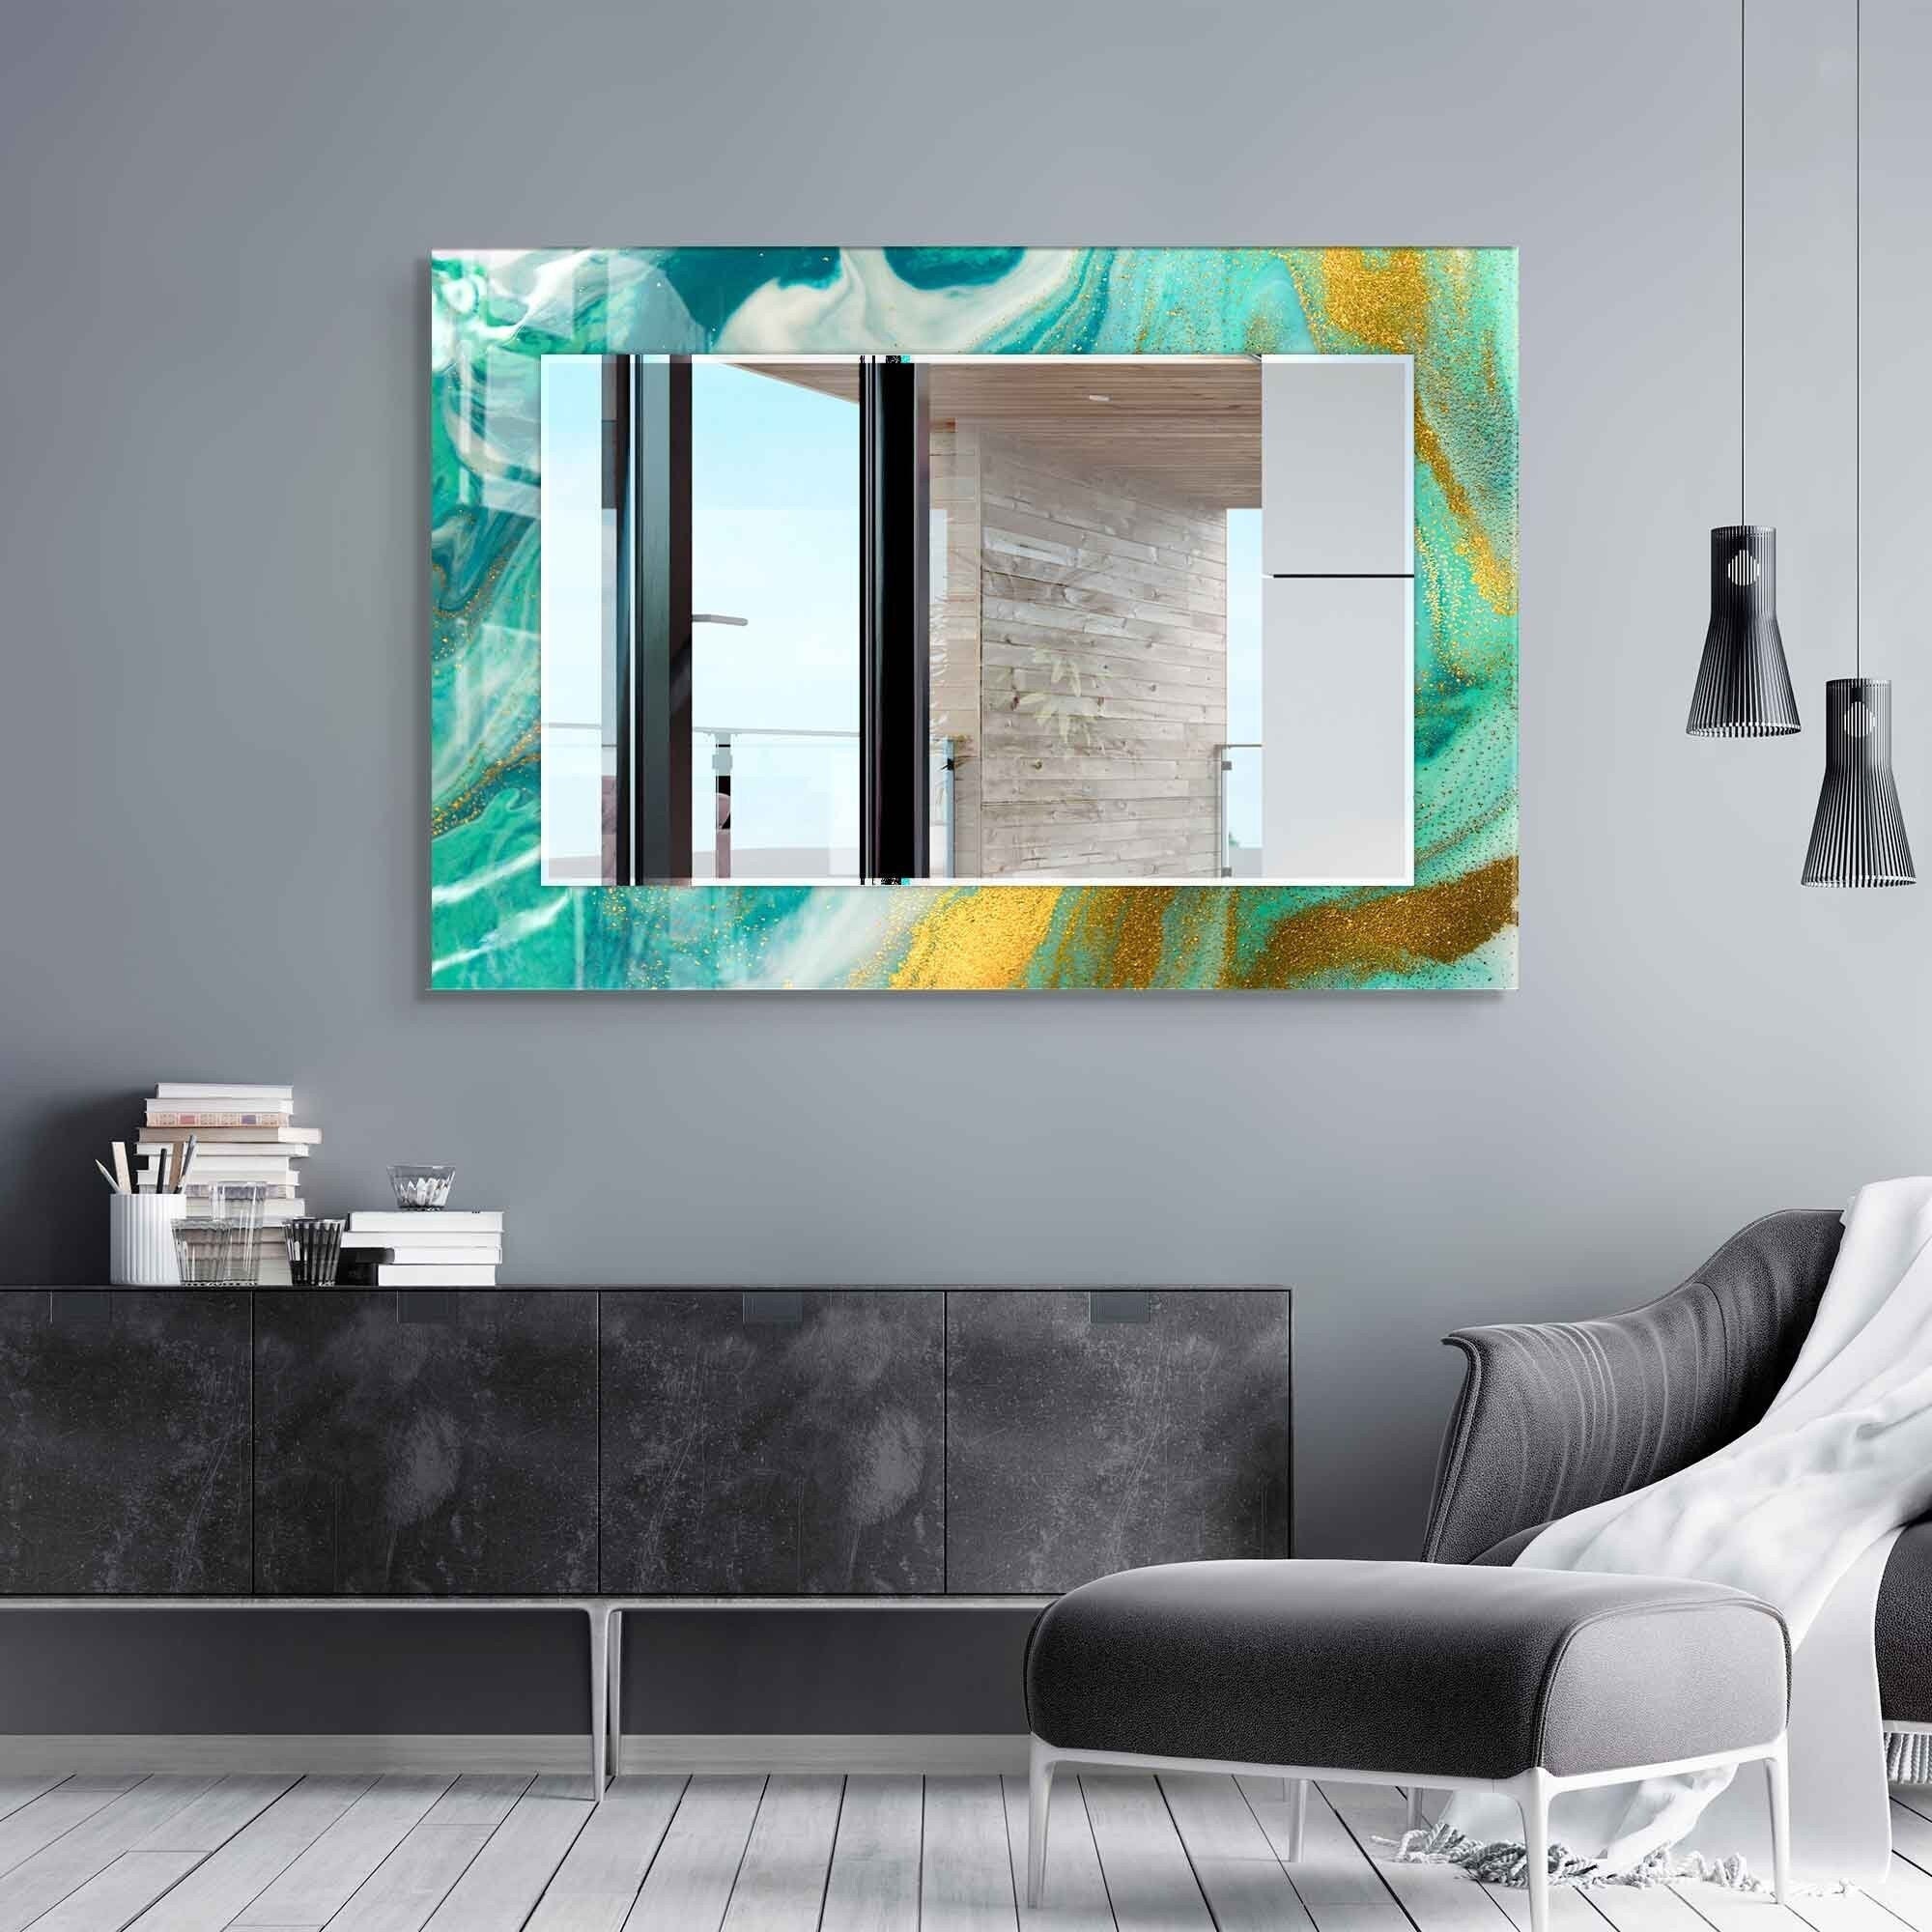 Wall Mirrors – OTD Furniture